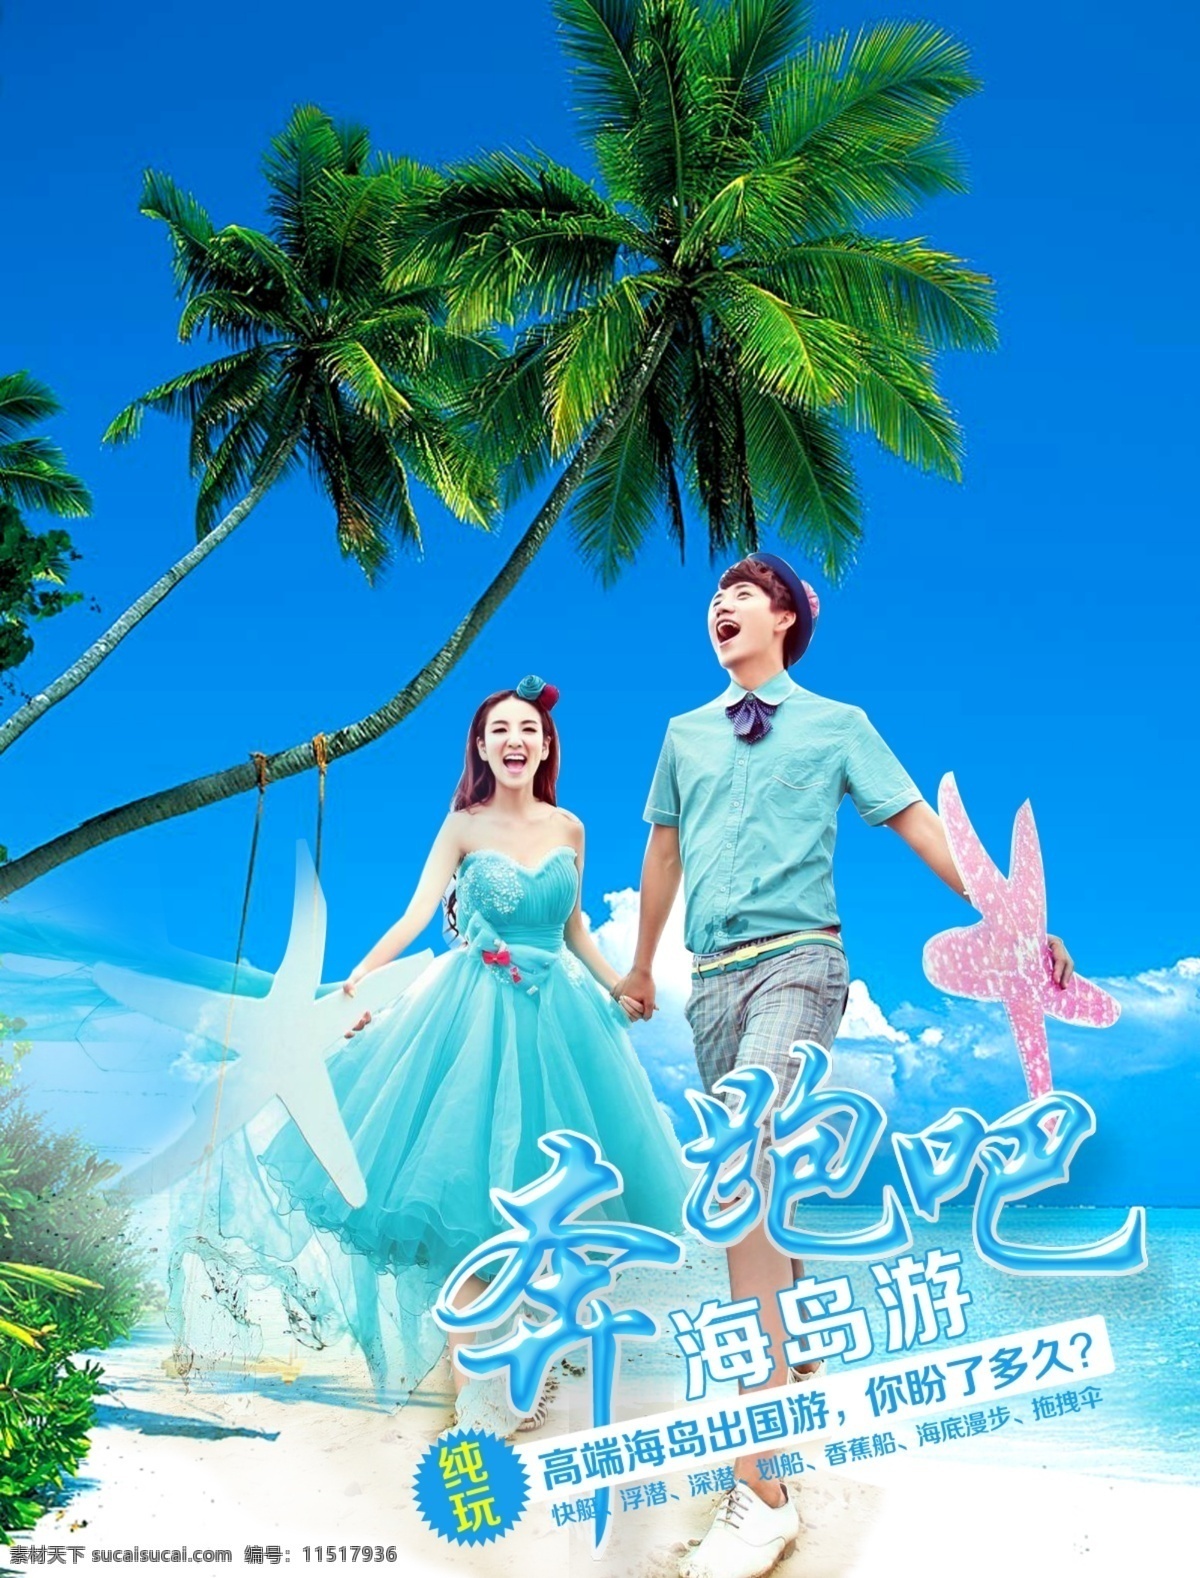 普吉岛 海岛 旅游 广告 幽 梦 轩 普吉 淘宝素材 淘宝设计 淘宝模板下载 蓝色